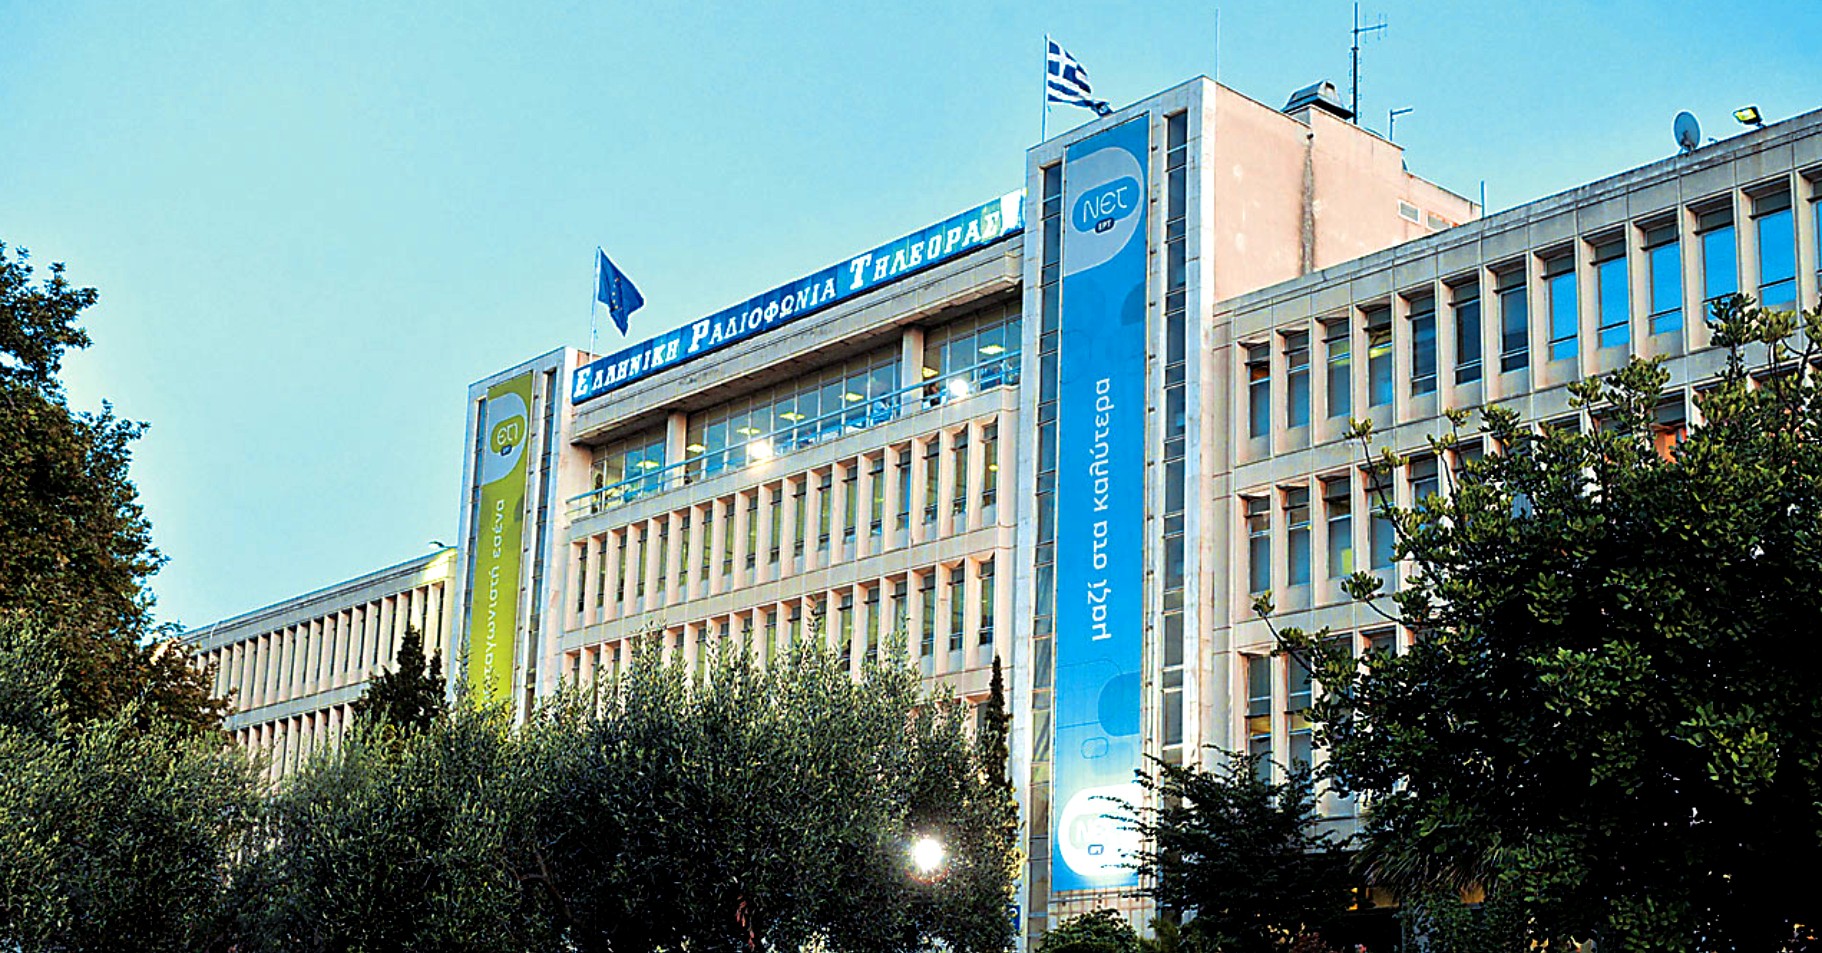 Τριγμοί στην κυβέρνηση για την αναδιάρθρωση της ΕΡΤ | tovima.gr